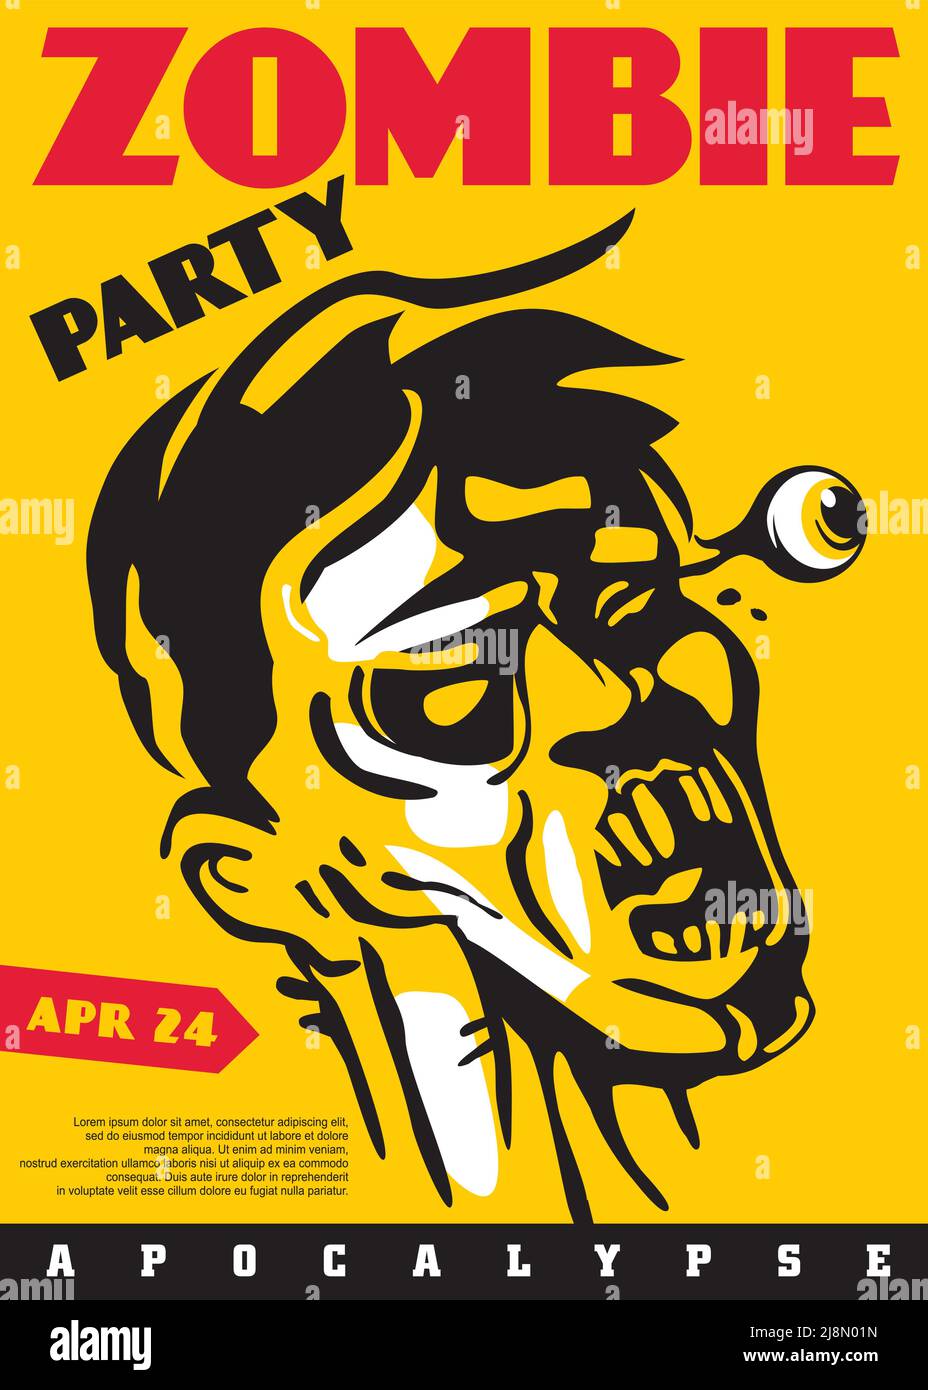 Stile comico Zombie disegno artistico party invito o poster design. Ritratto horror zombie su sfondo giallo brillante. Illustrazione Vettoriale